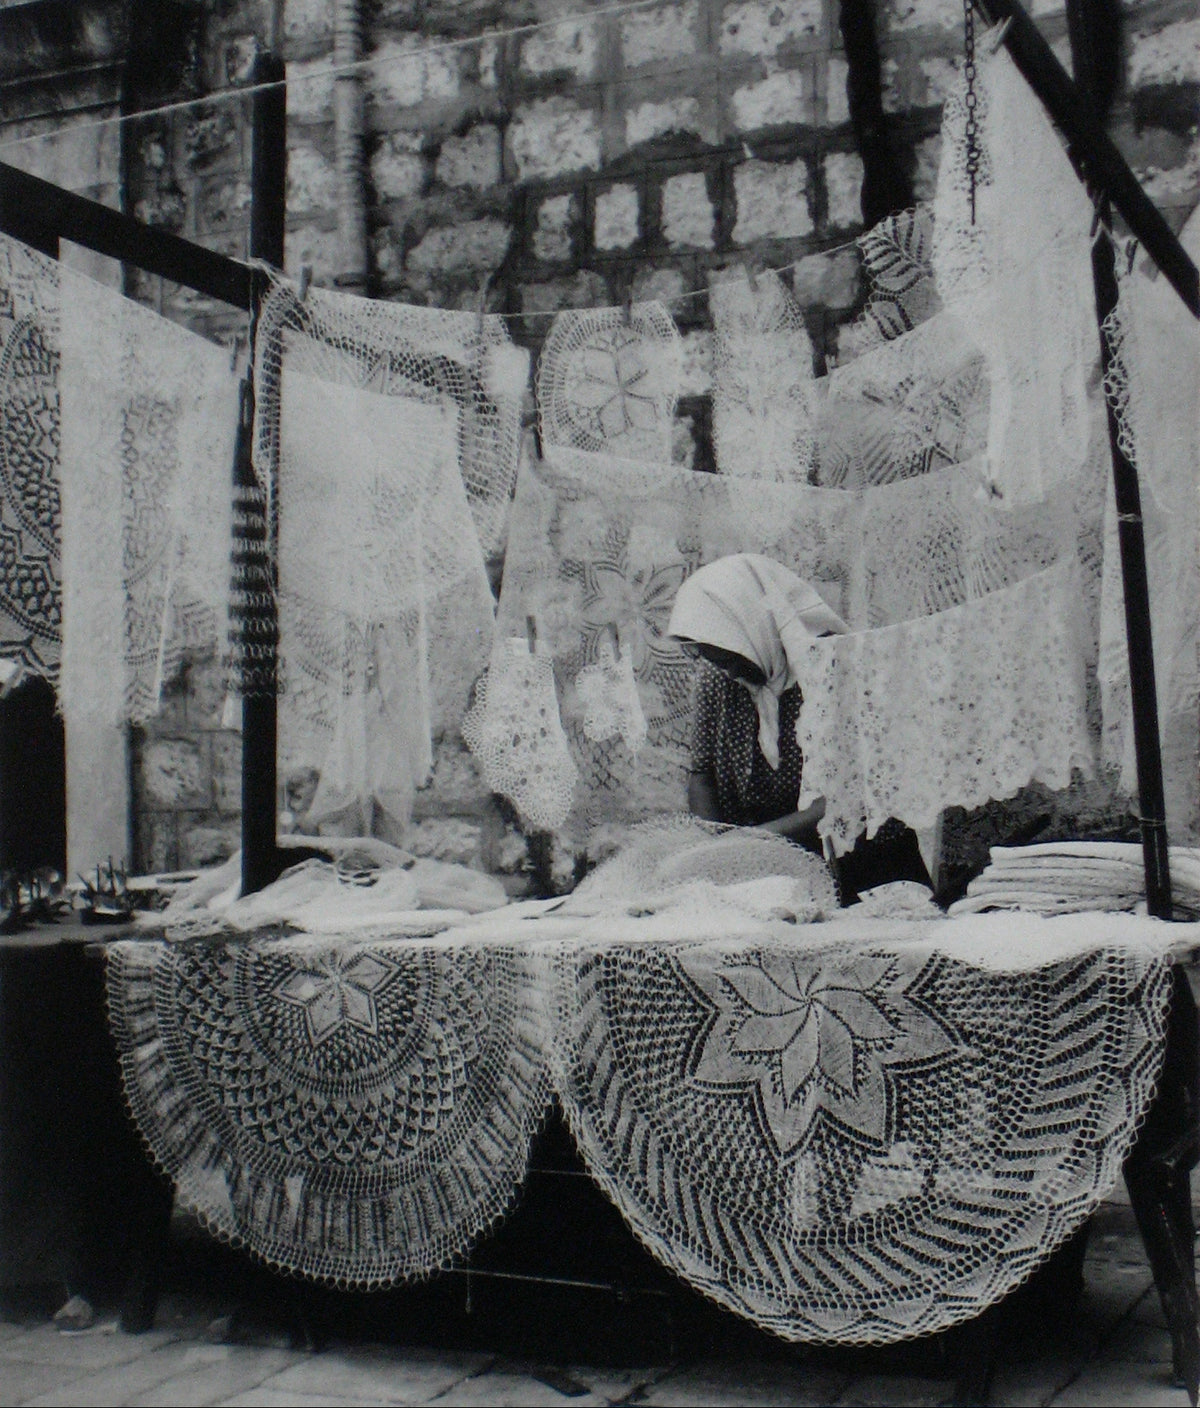 The Lace Seller - Dubrovnik, Yugoslavia&lt;br&gt;1960s Silver Gelatin Print&lt;br&gt;&lt;br&gt;#12178